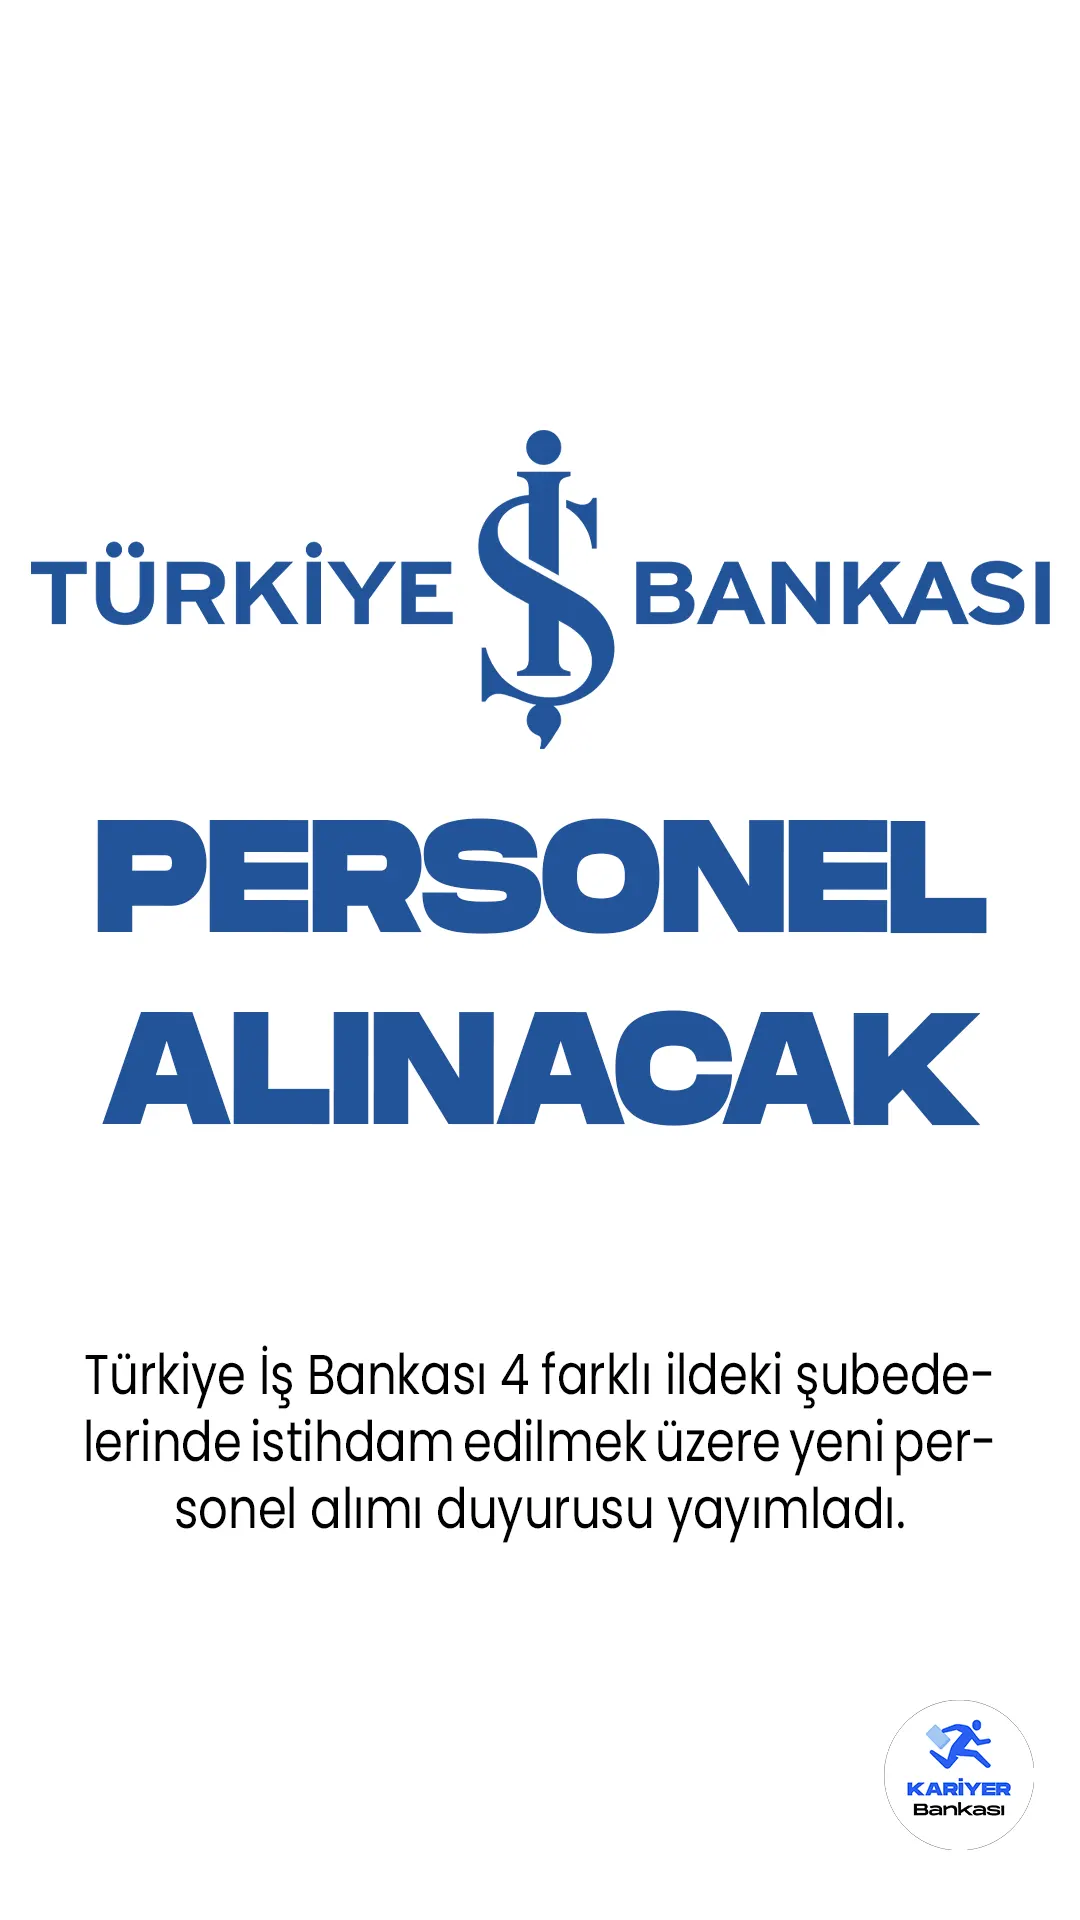 İş Bankası, İstanbul, İzmir, Antalya ve Bursa'daki kurumsal şubelerinde görevlendirilmek üzere "Kurumsal Müşteri İlişkileri Yöneticisi-Uzman Yardımcısı" pozisyonunda personel alımı yapacağını duyurdu. İlgili ilan, bankanın resmi kariyer sitesi üzerinde yayımlandı.